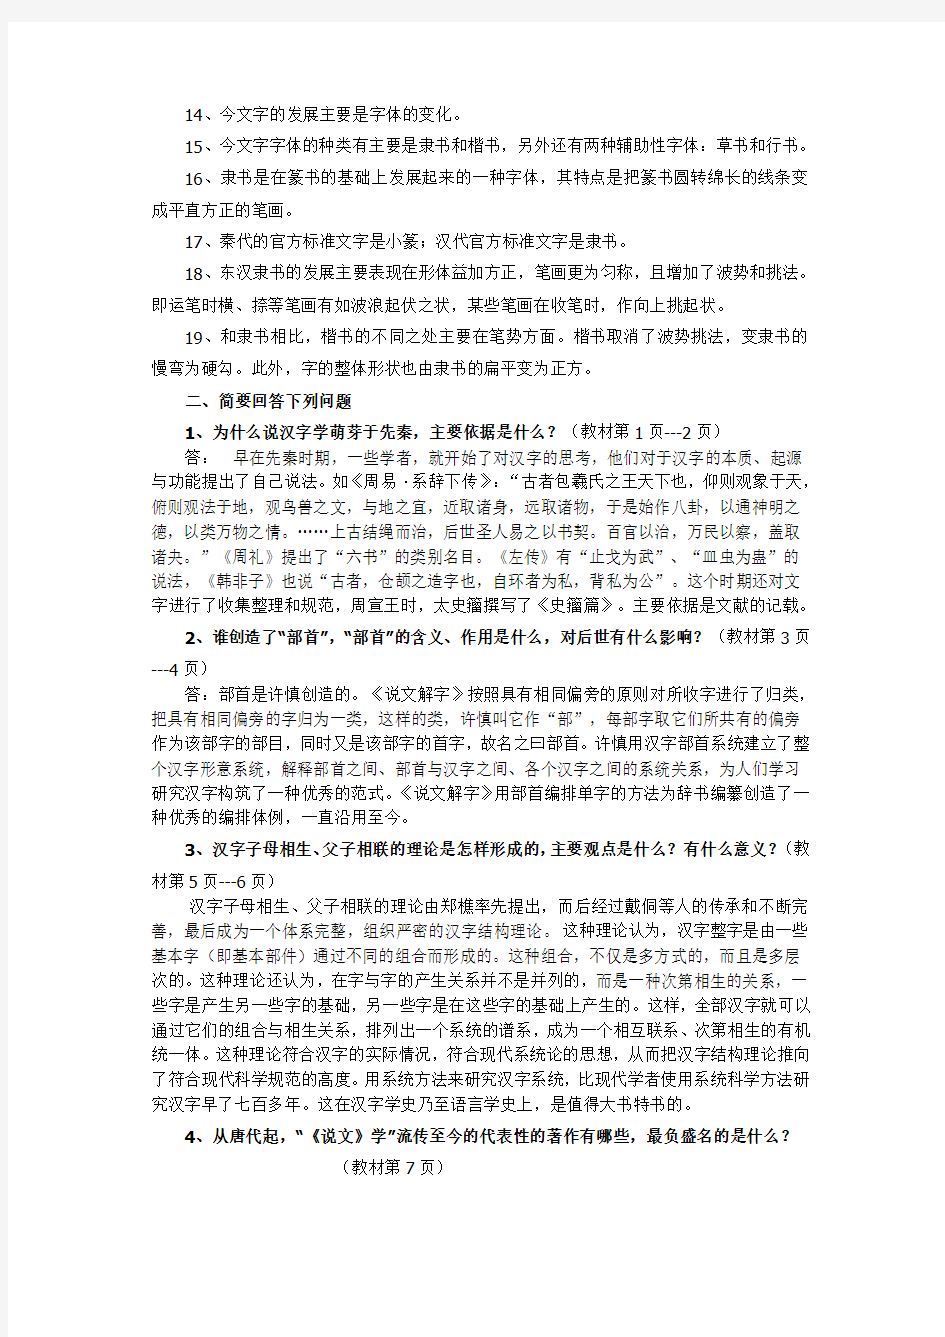 2017年电大古代汉语专题形成性考核册作业答案-全